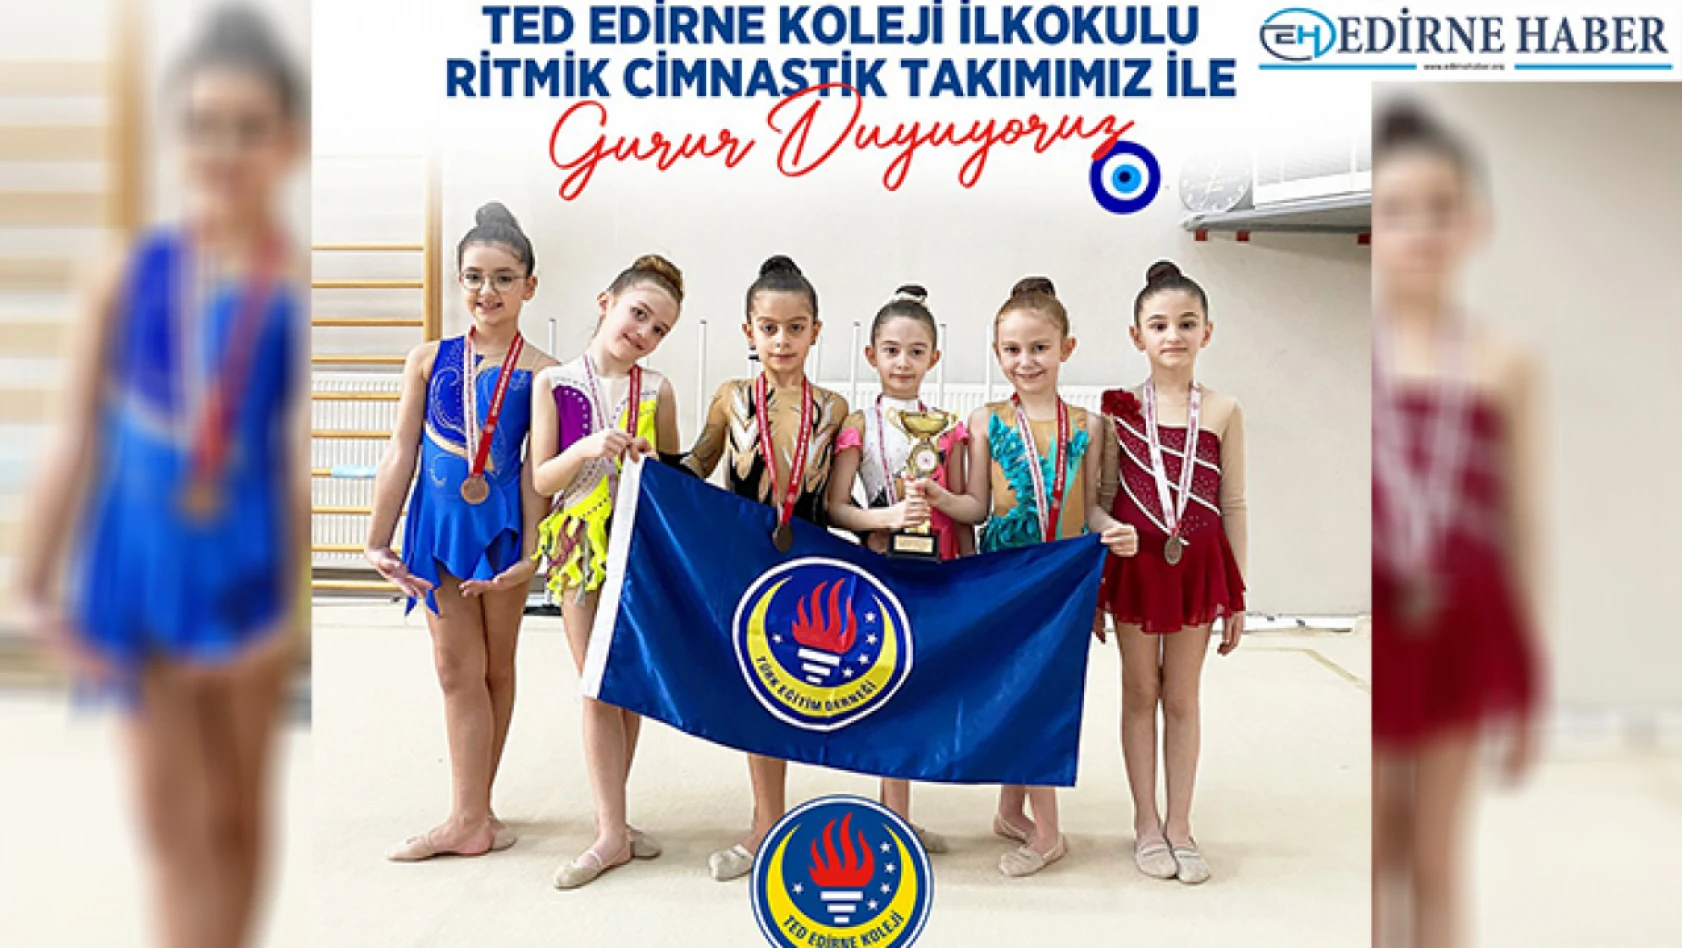 TED Edirne Koleji İlkokulu Ritmik Jimnastik Takımı,  gösterileriyle nefes kesti